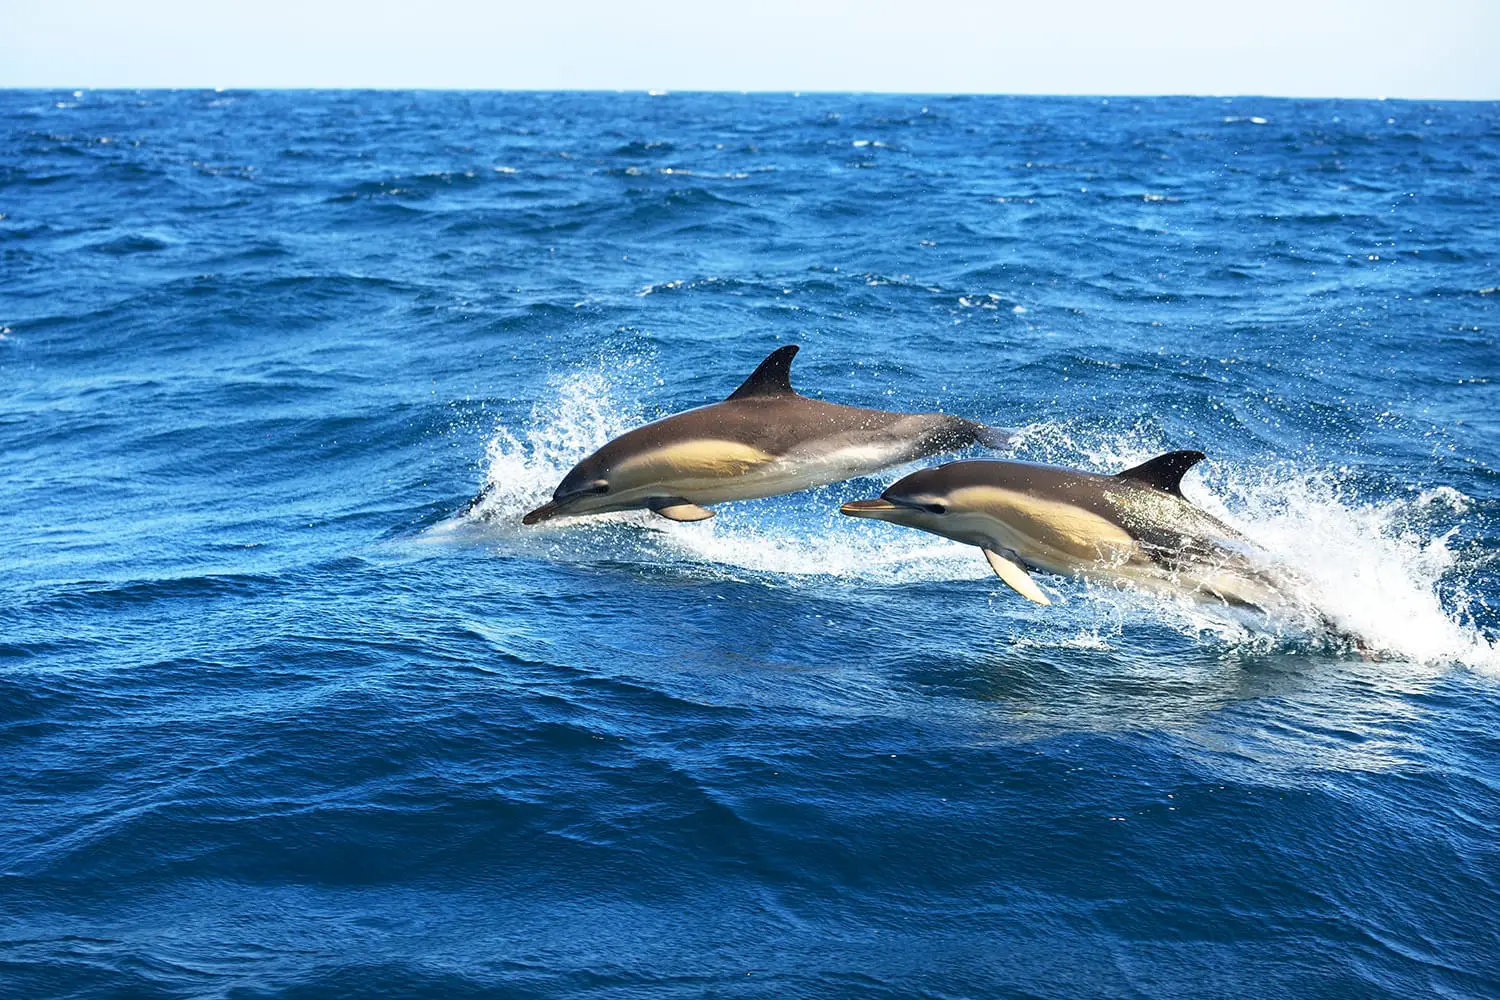 Δύο δελφίνια που πηδούν στη Μεσόγειο θάλασσα μια καθαρή μέρα, το ριγέ δελφίνι (Stenella coeruleoalba) σε κοντινή απόσταση. Κύματα και πιτσιλιές νερού. Θέα από το ιστιοπλοϊκό. Ισπανία